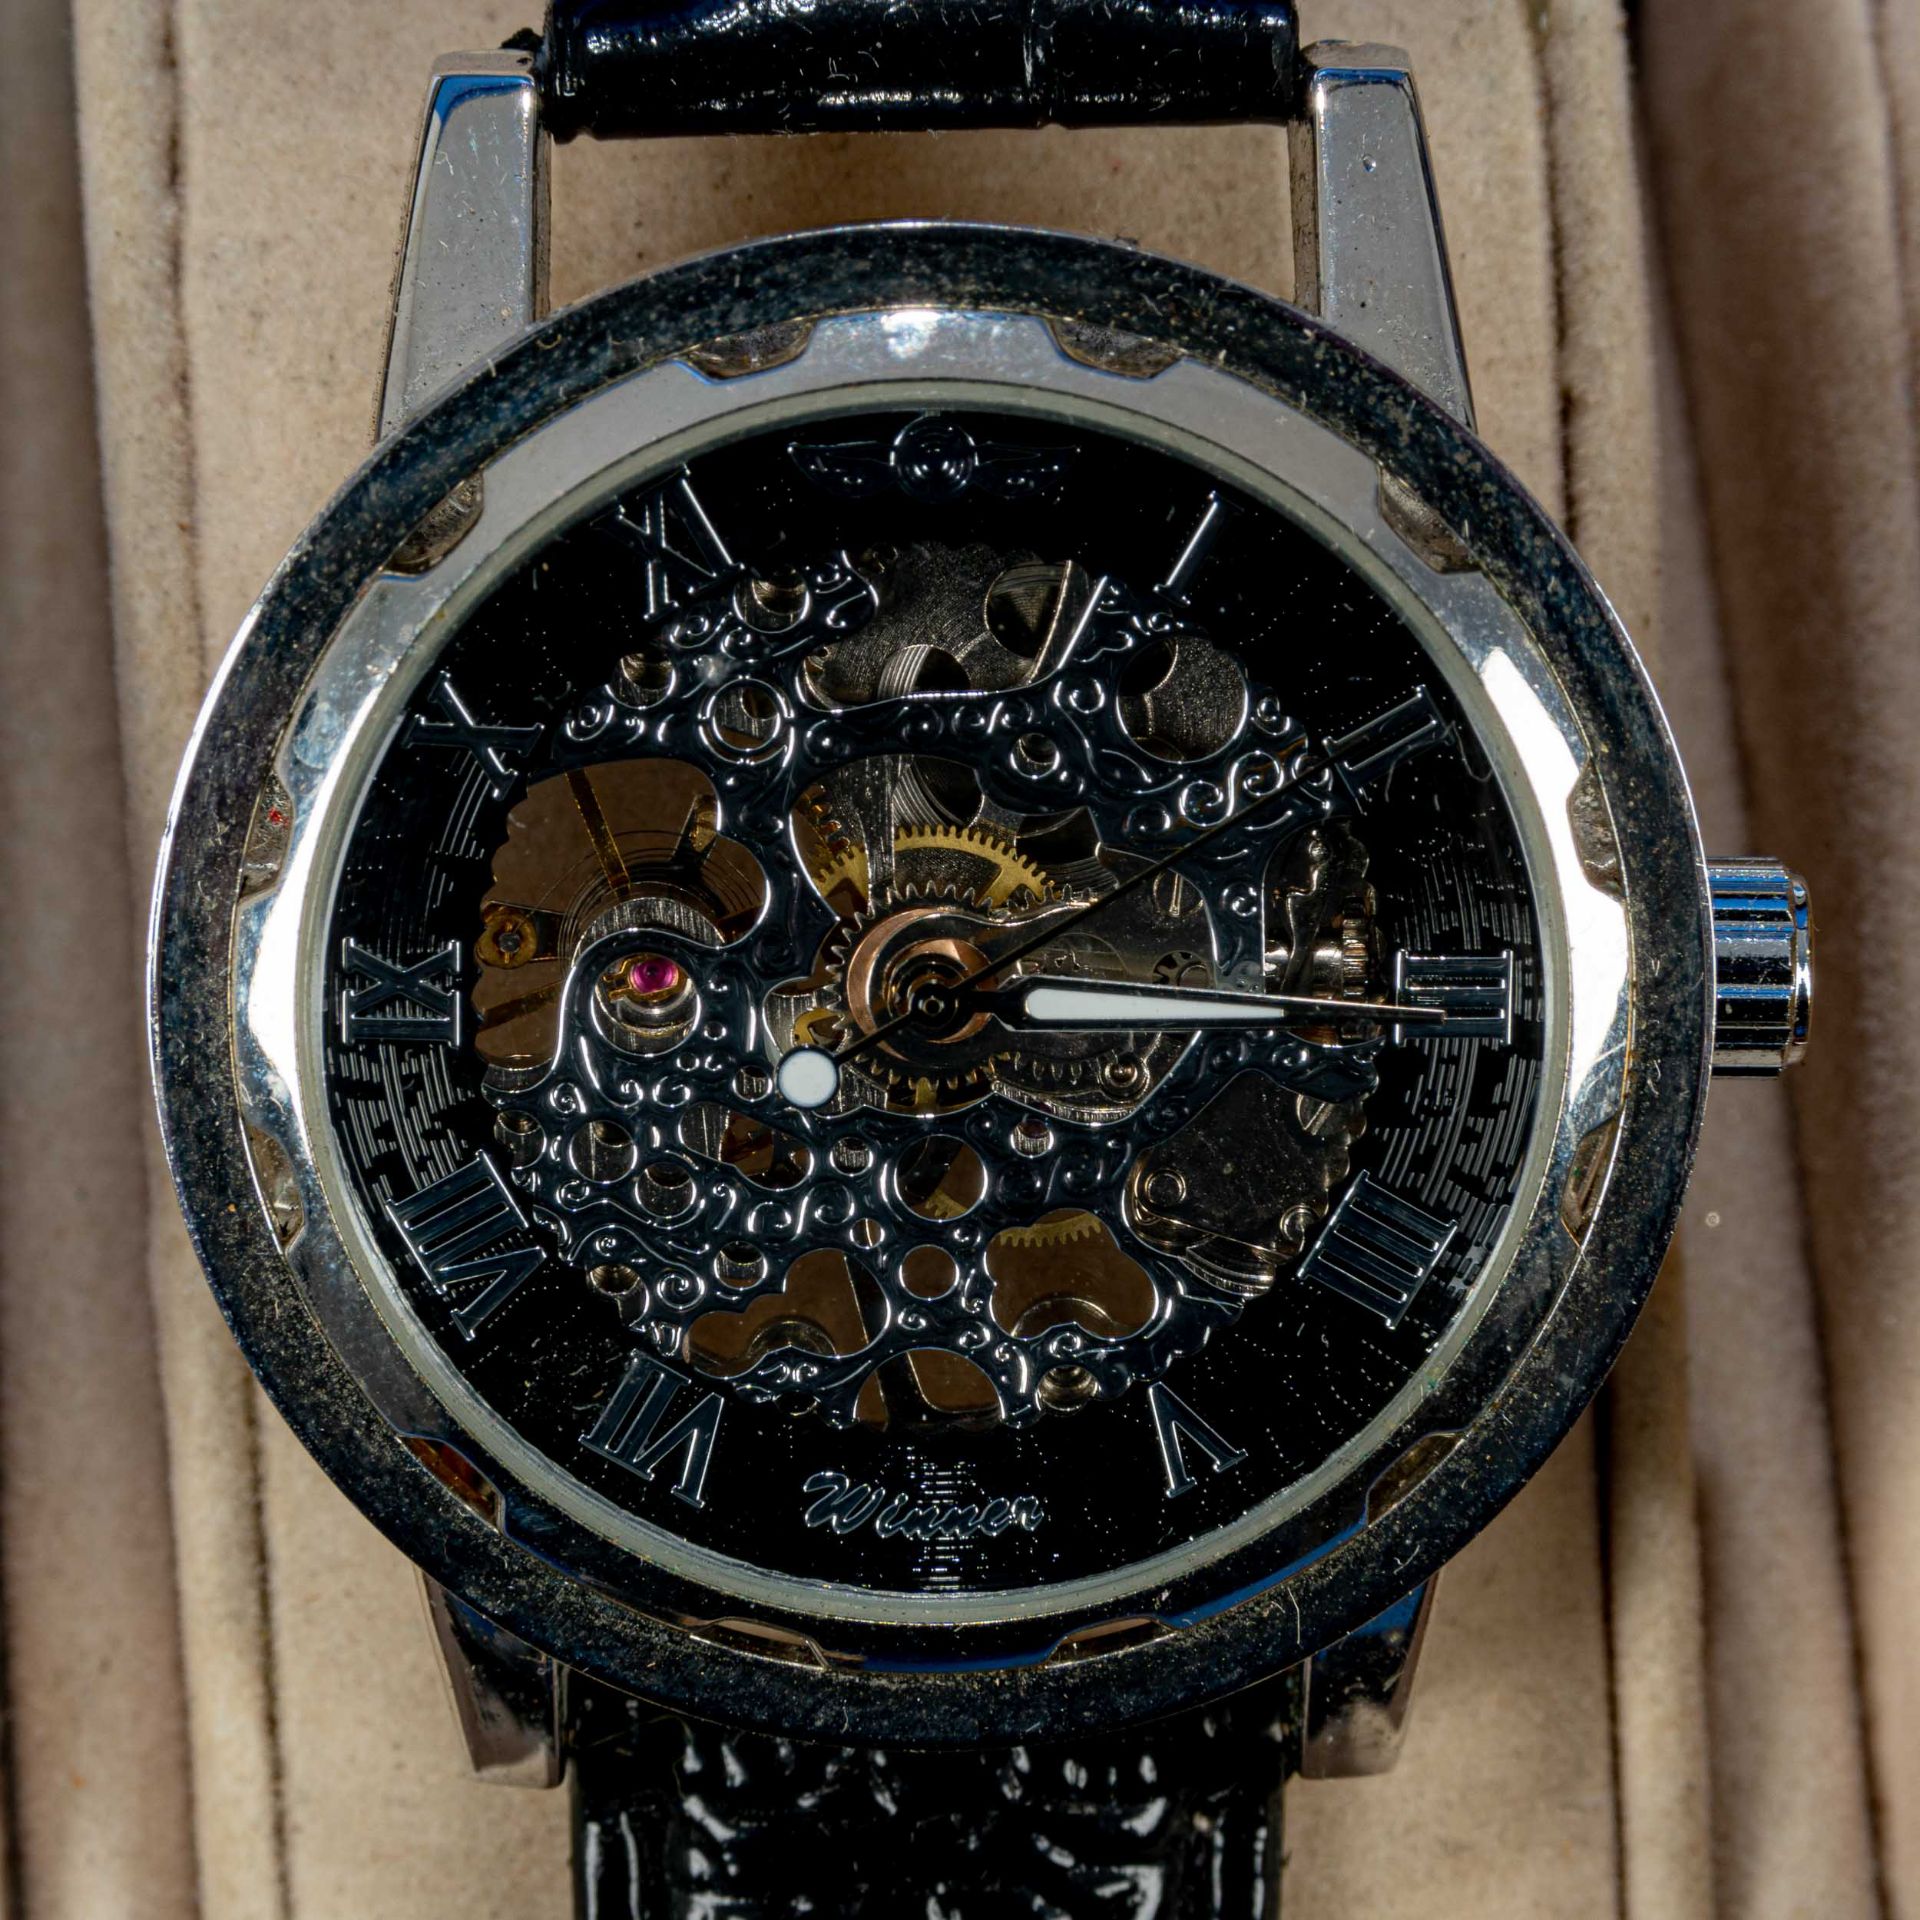 7teilige Uhrensammlung, u. a. der Marke Swatch; versch. Alter, Größen, Materialien, Hersteller, Wer - Bild 5 aus 8